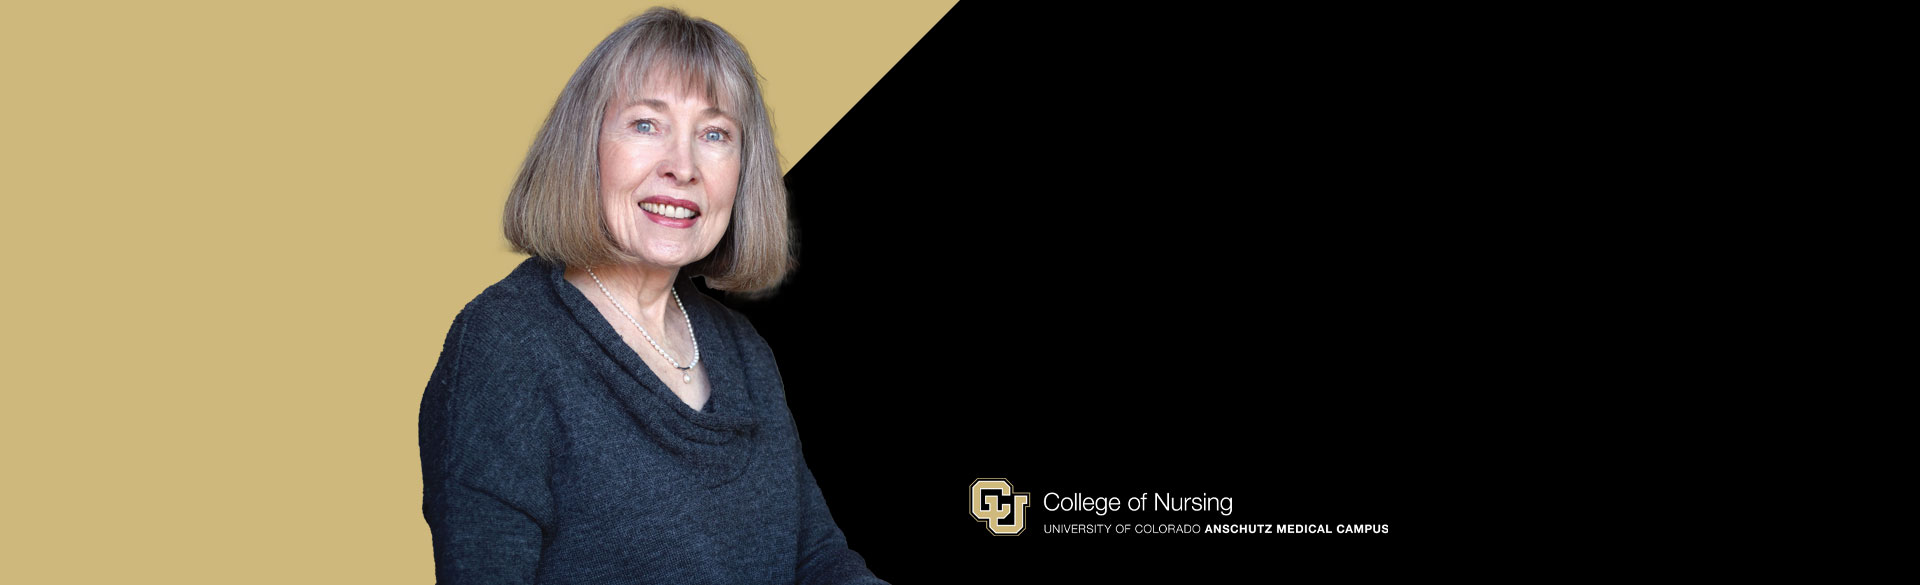 CU College of Nursing Alumna and Distinguished Service Award Karen Zink